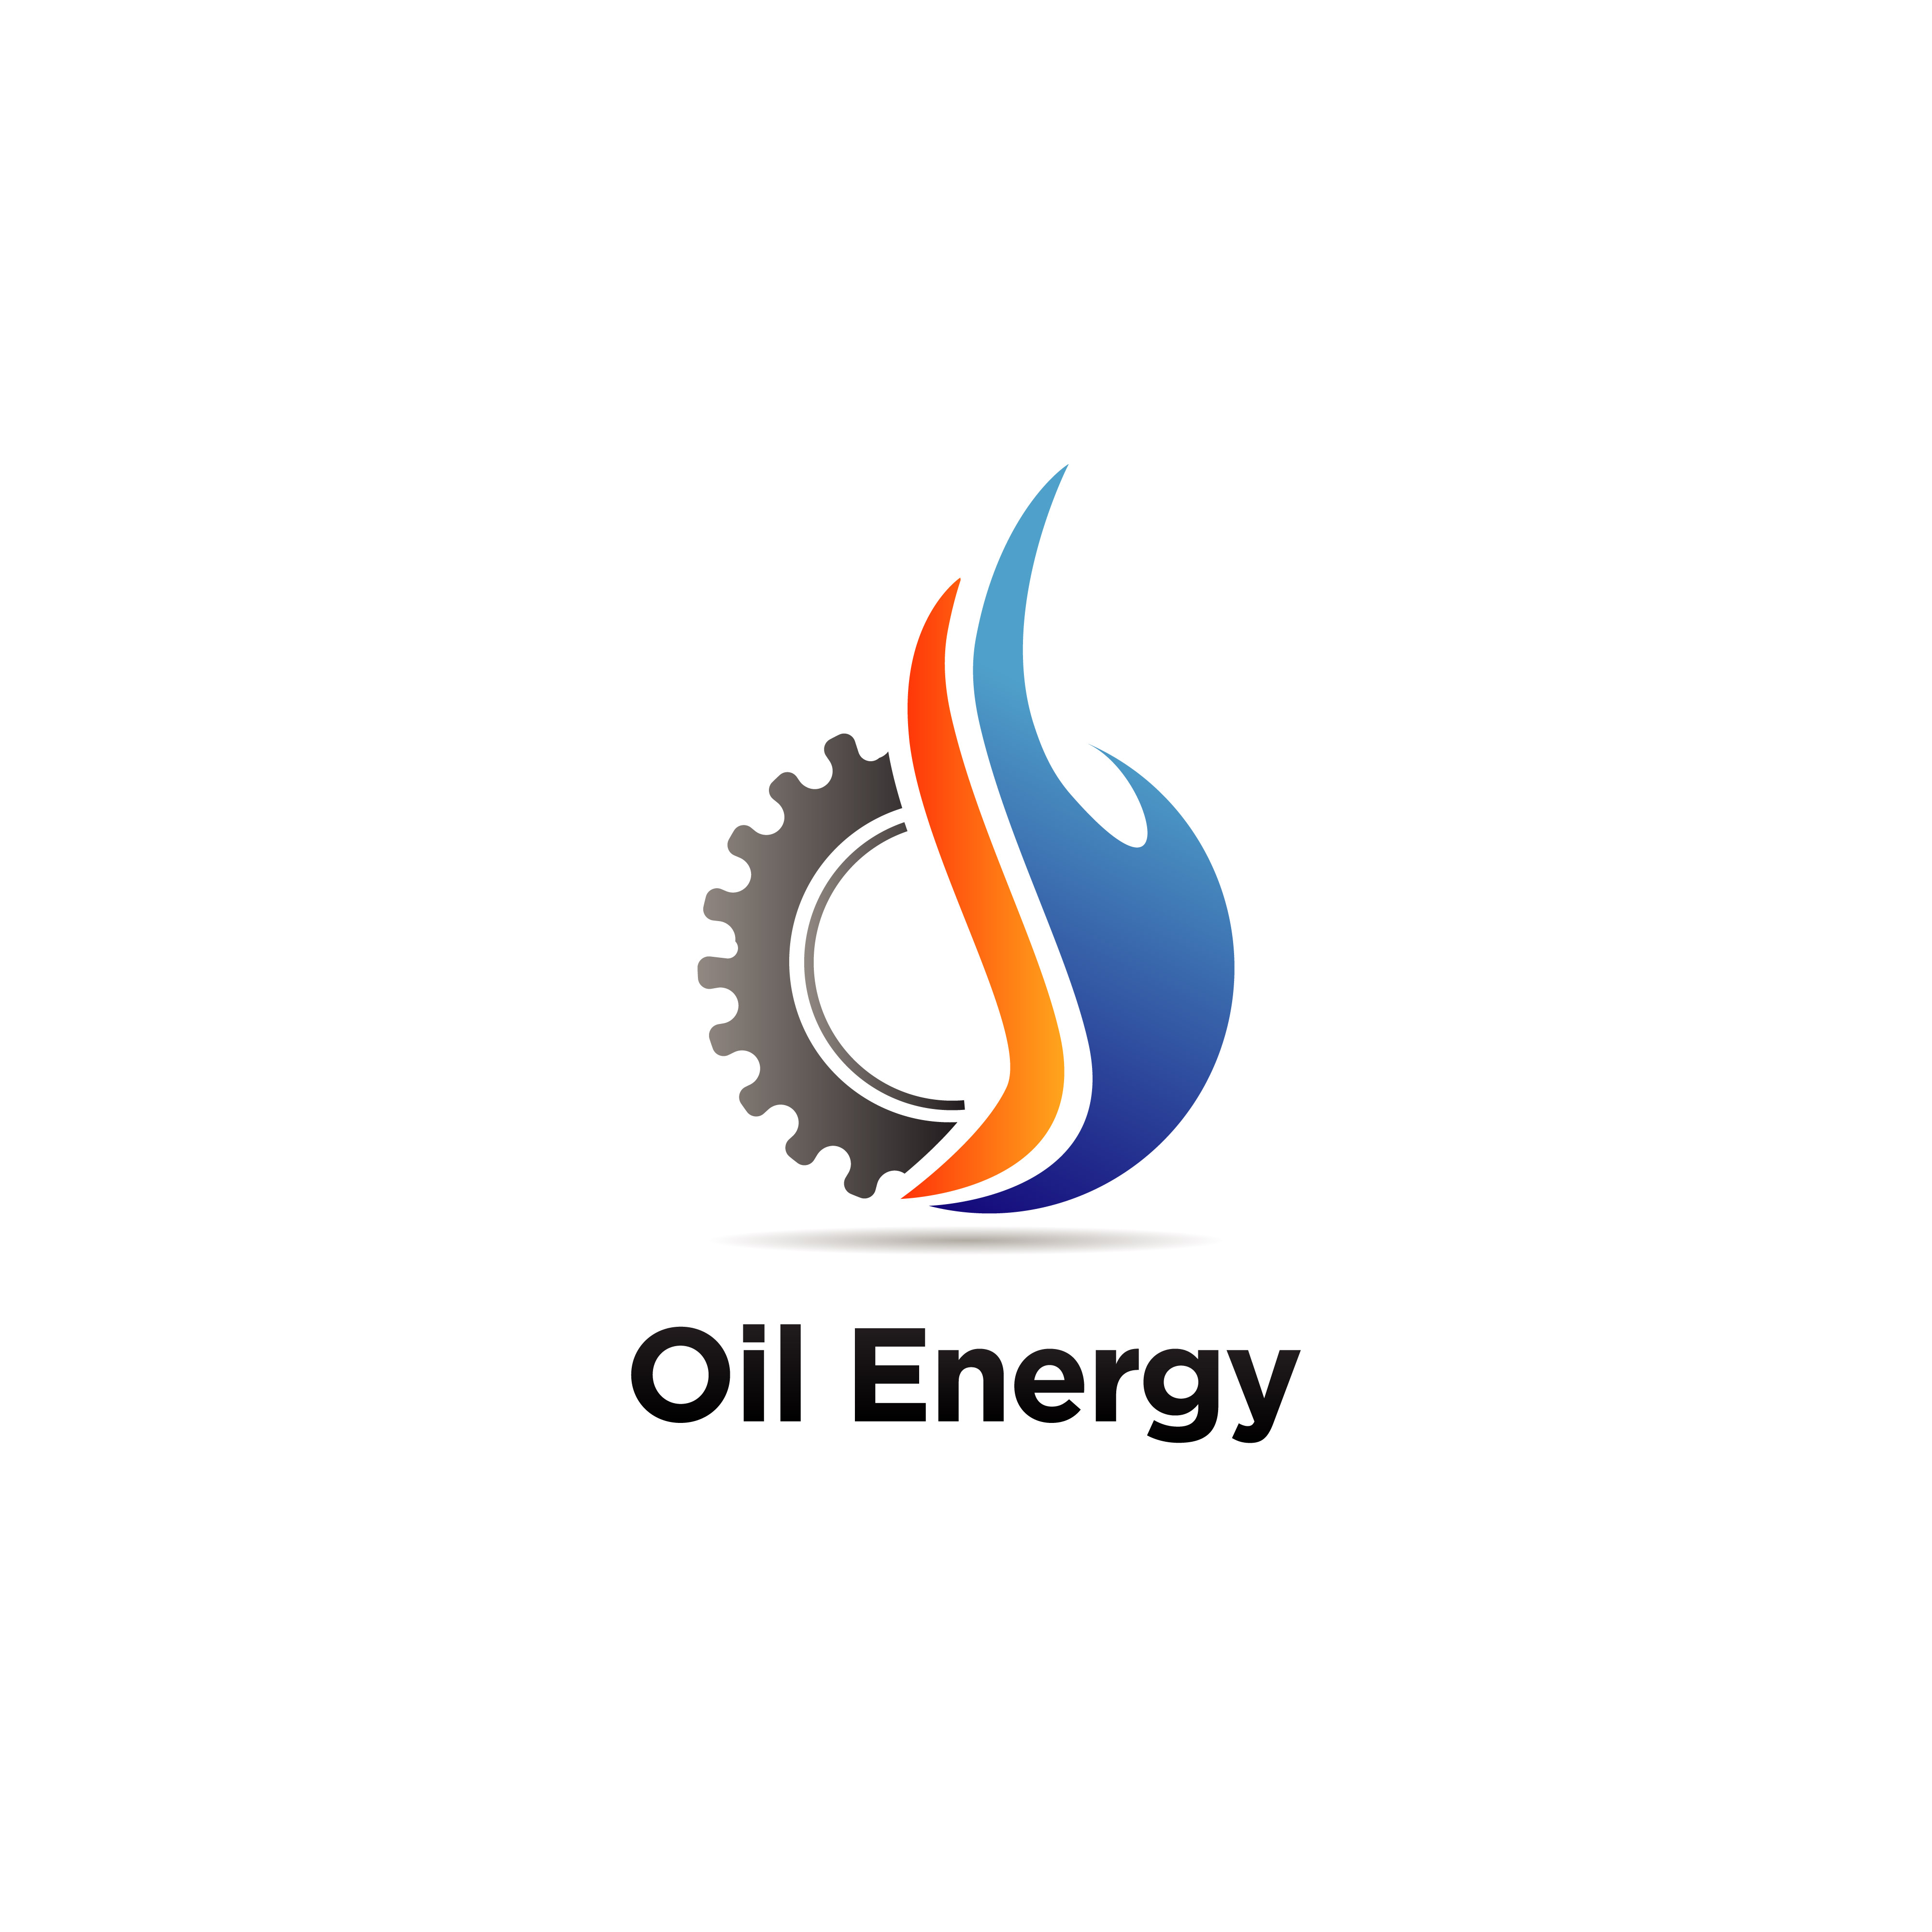 Oil Engineering Logo 660389 Vector Art At Vecteezy